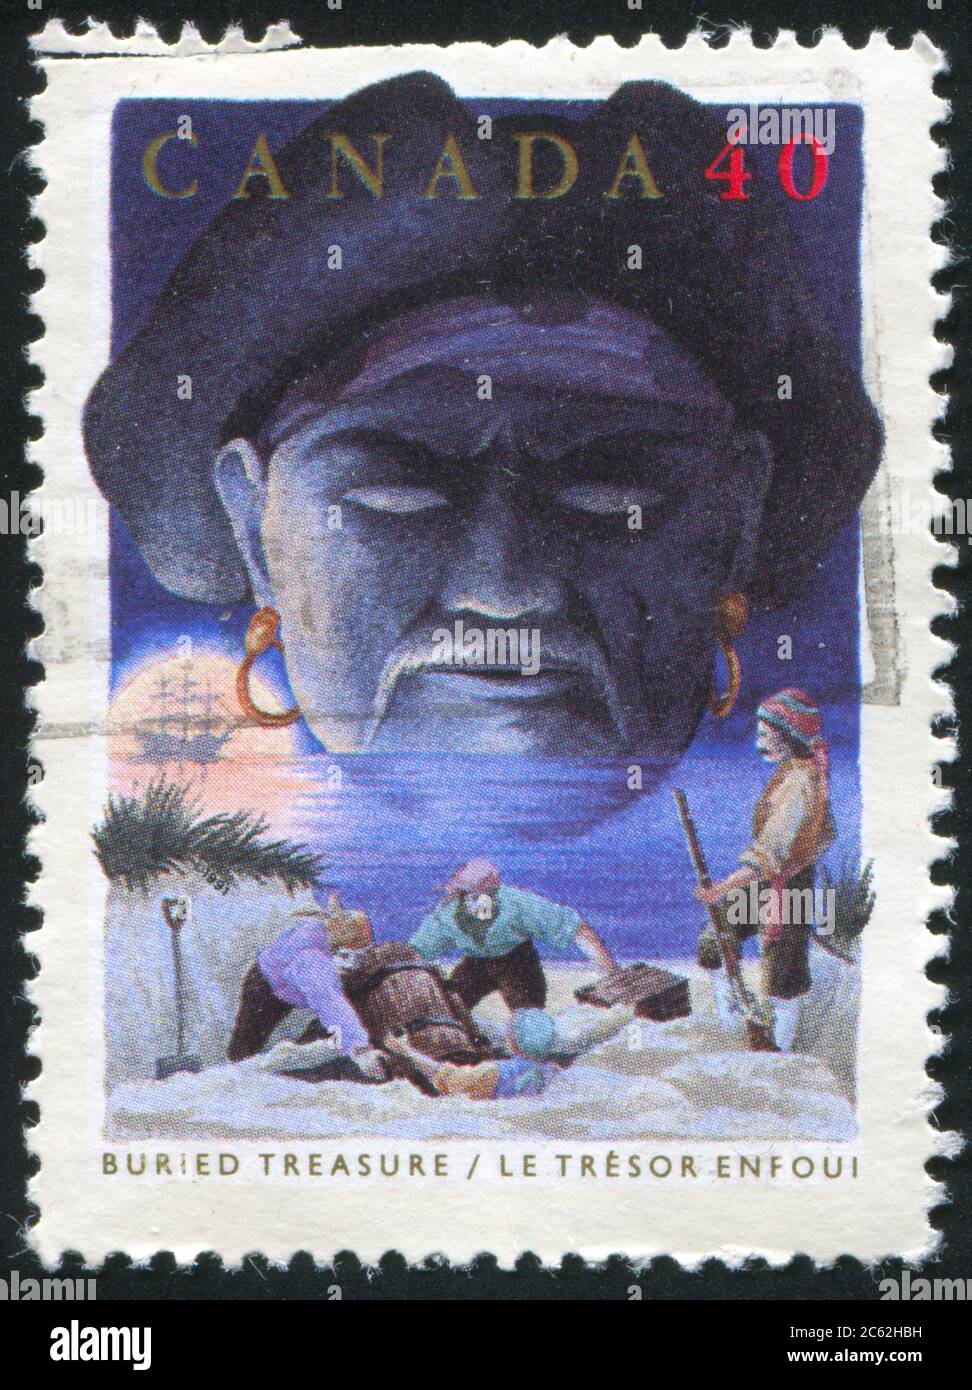 KANADA - UM 1991: Briefmarke gedruckt von Kanada, zeigt Folktales, Buried Treasure, um 1991 Stockfoto